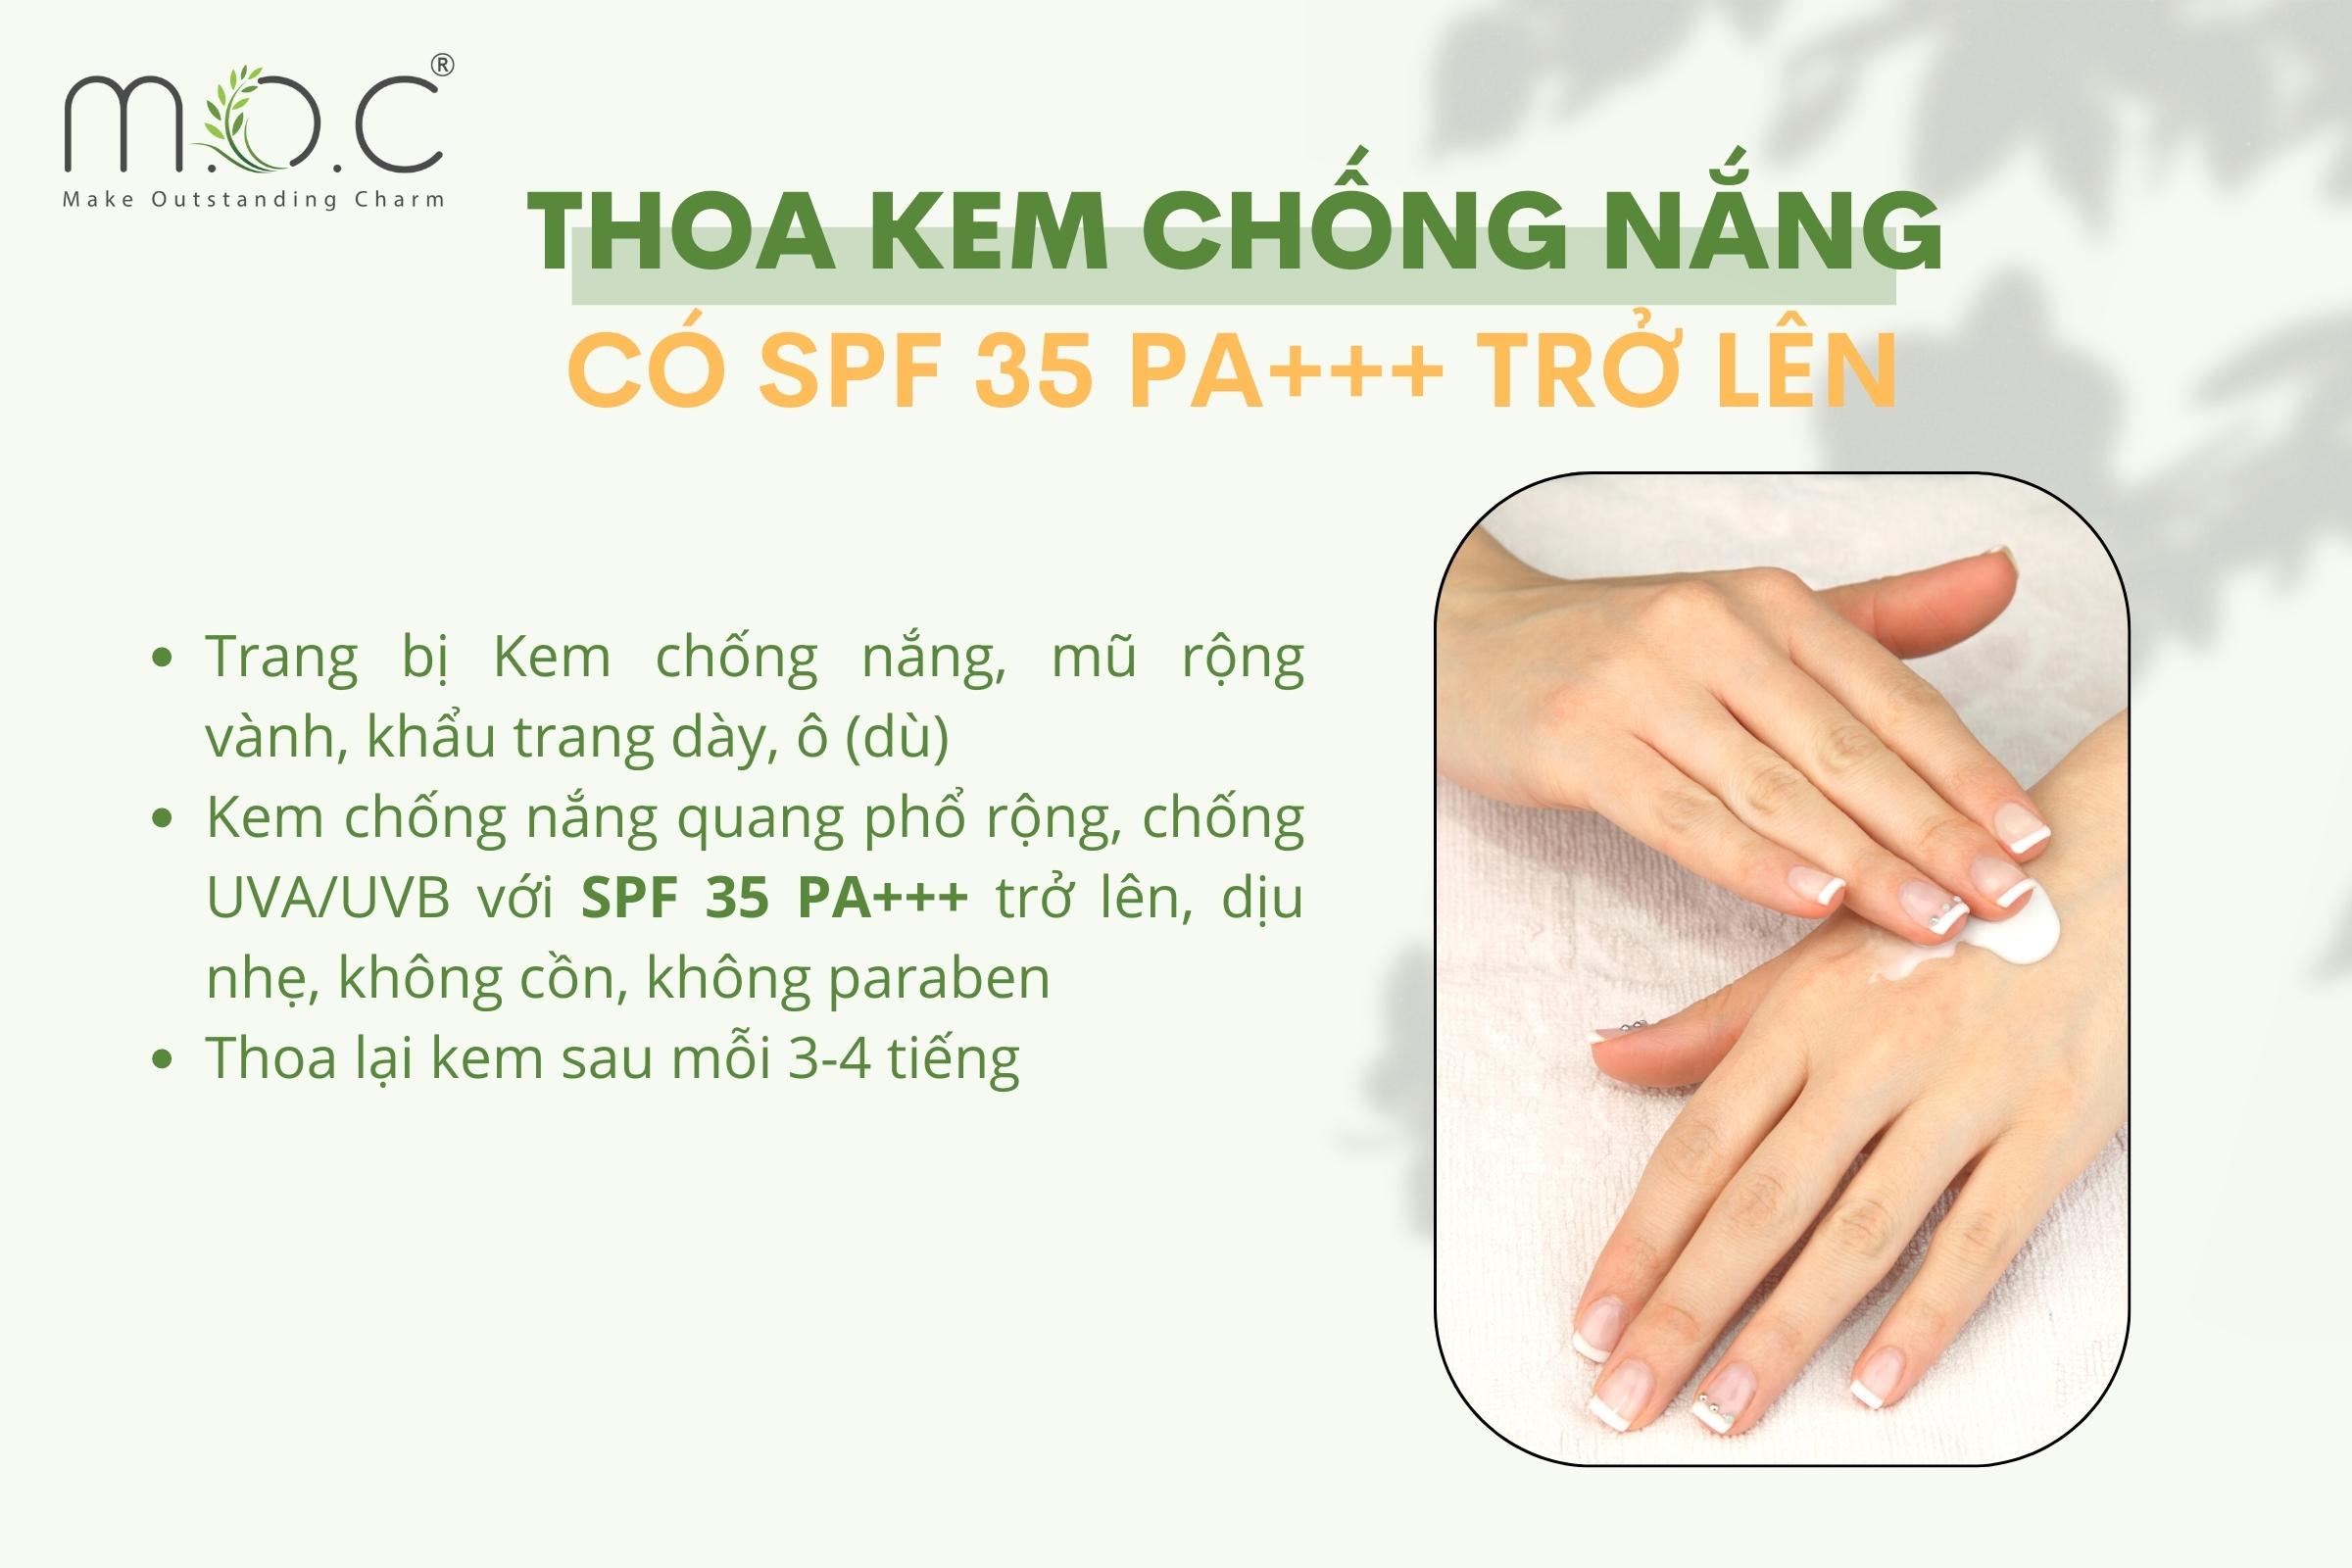 chon-kem-chong-nang-co-spf-tren-35